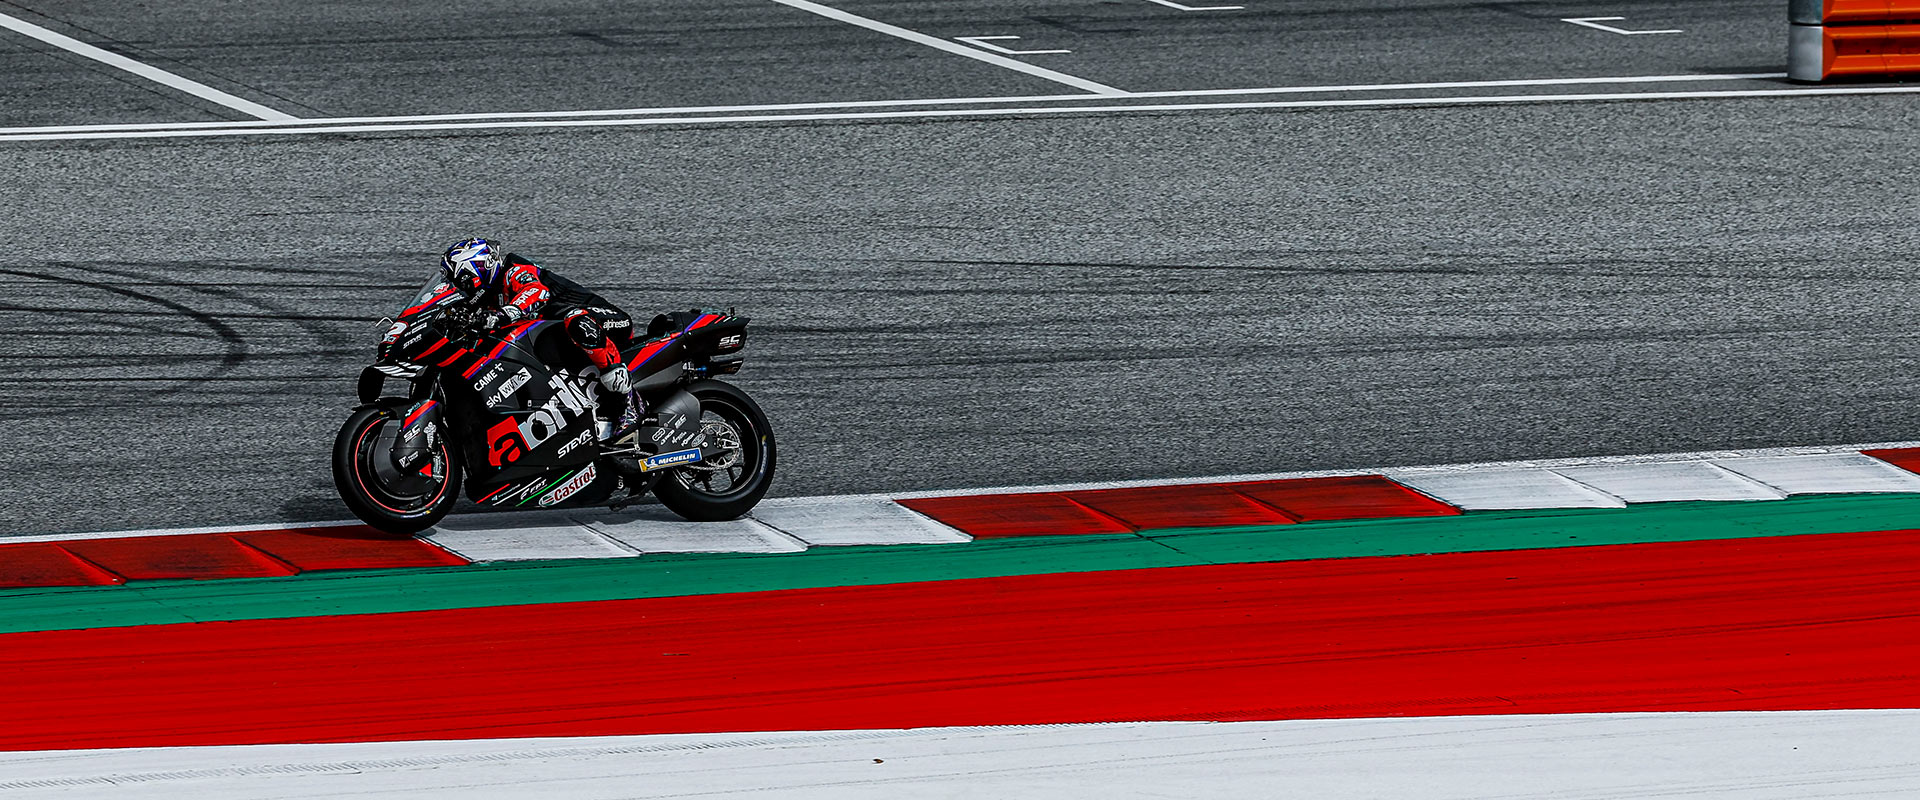 MotoGP 2022 - Free Practice